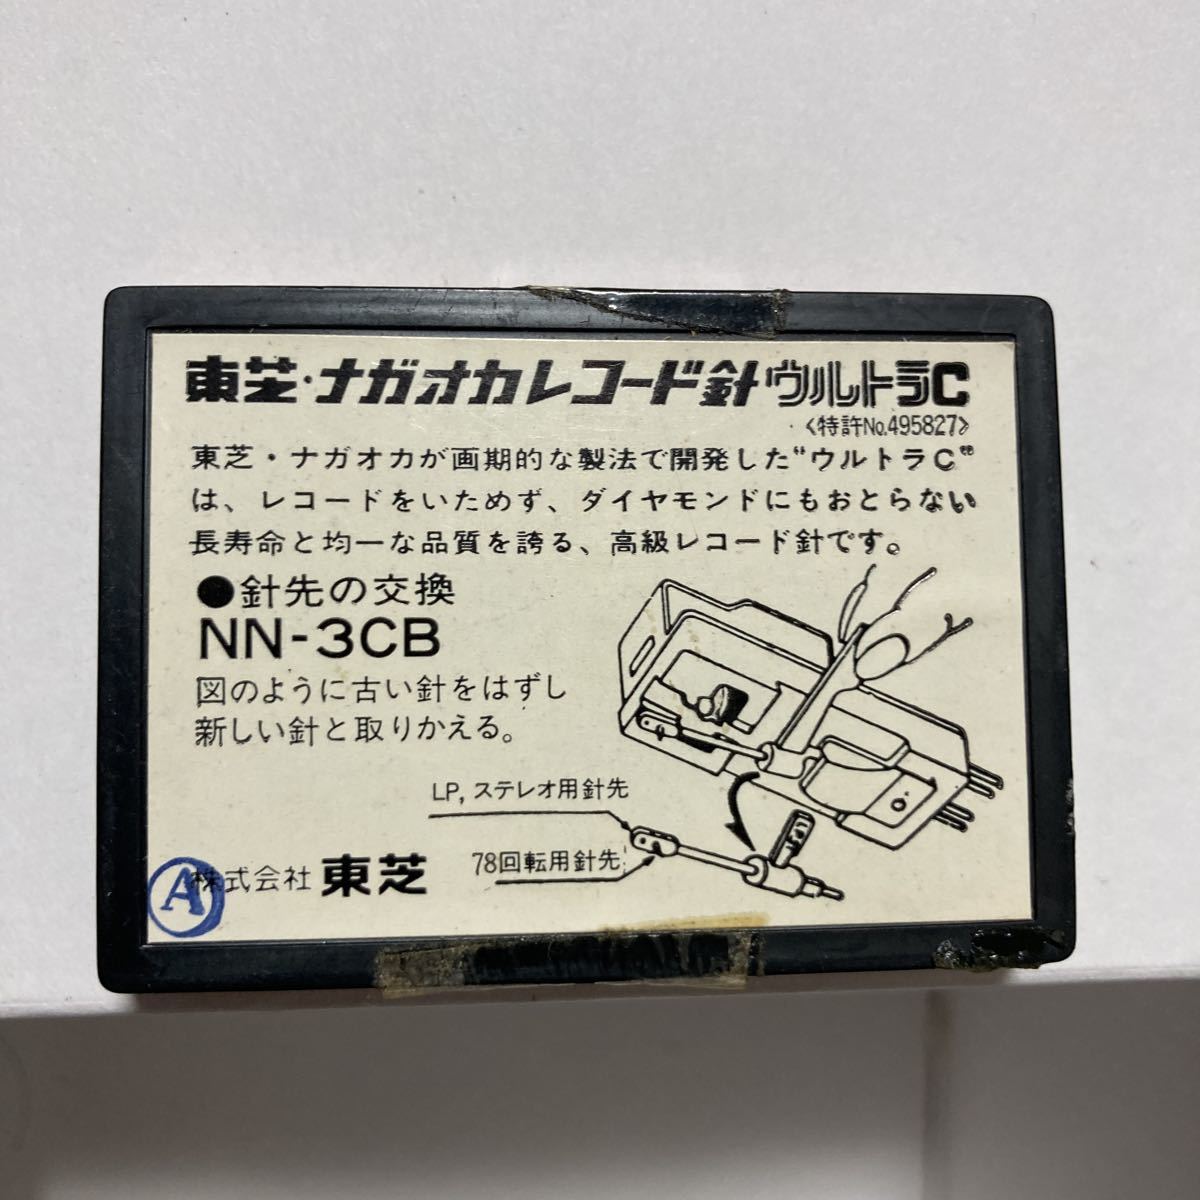  пластинка  игла   Toshiba  ... NN-3CB ULTRA.C  ликвидация склада   товар 